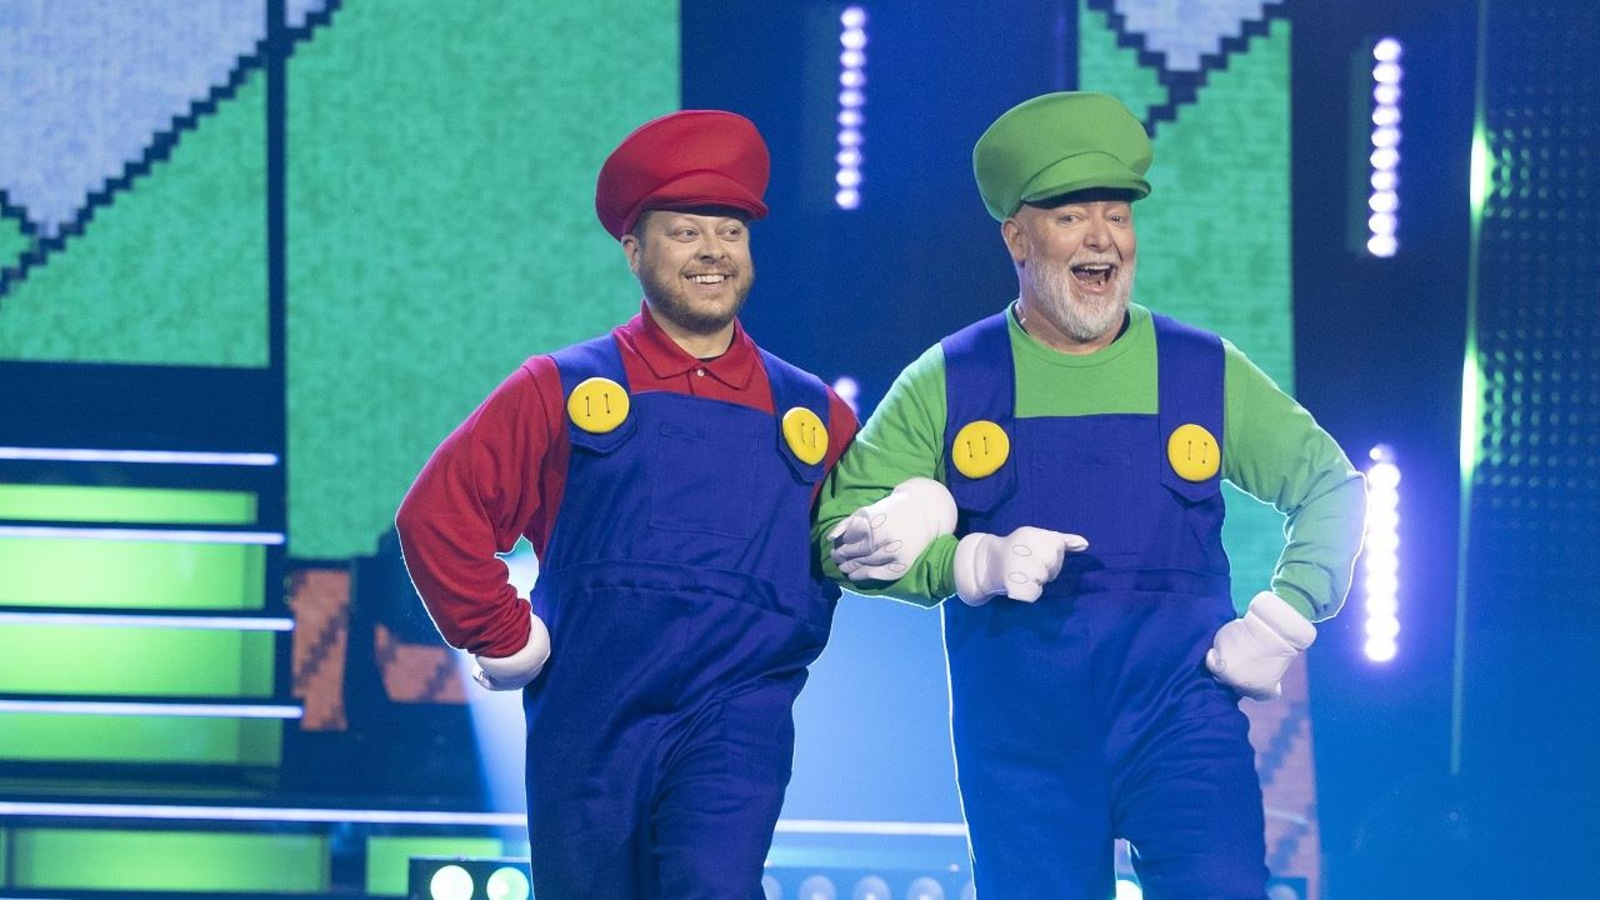 Les artistes sont déguisés en Mario Bros et Luigi et ils dansent sur scène.